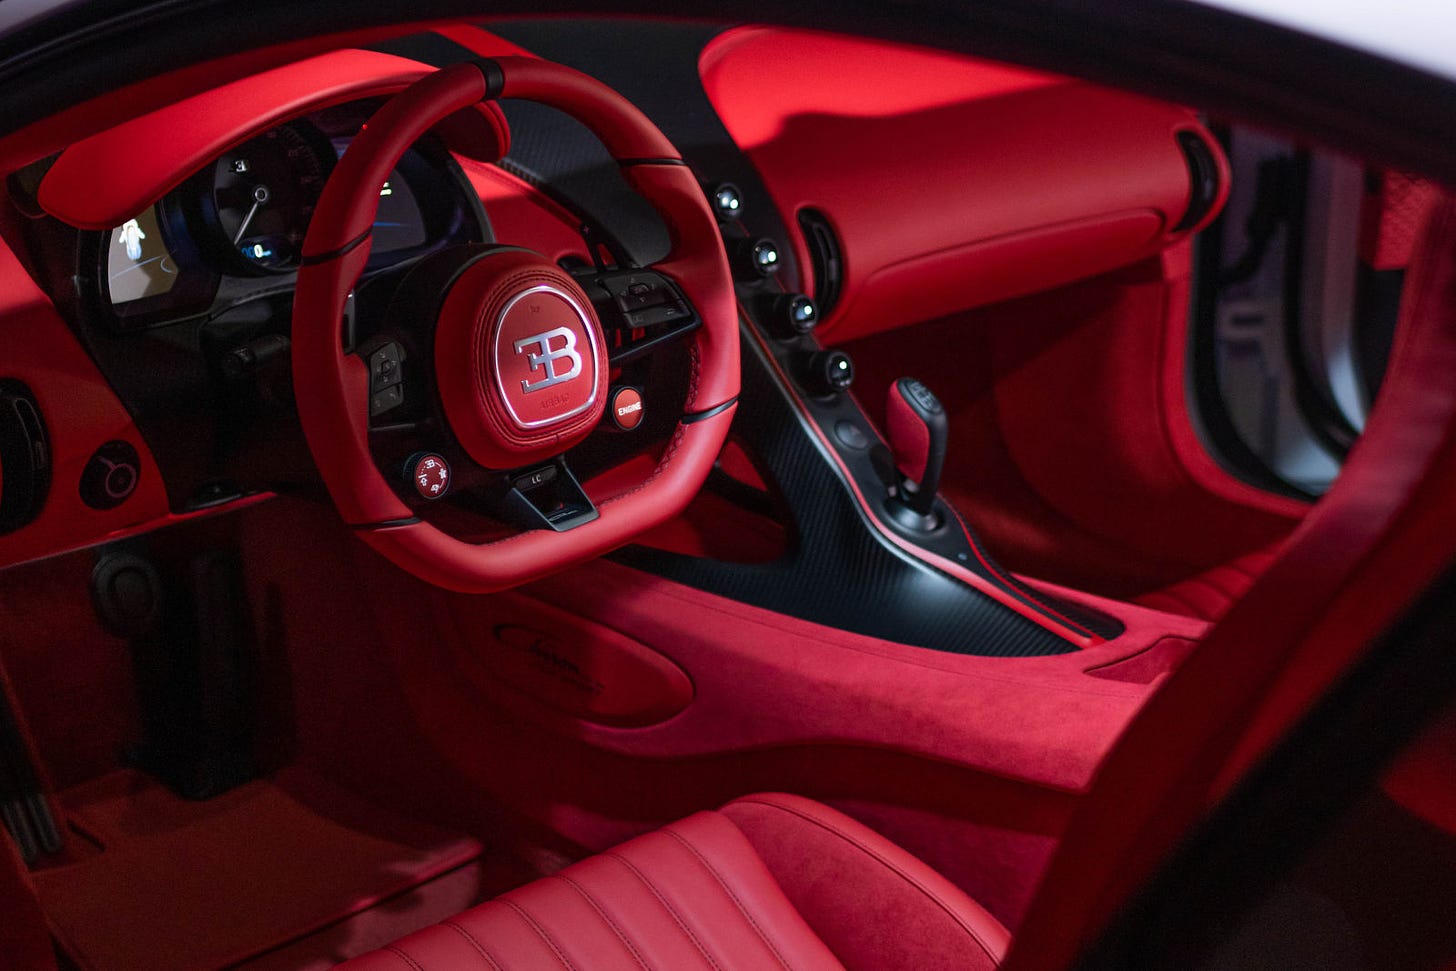 Interior dashboard of Bugatti Chiron (credit: Bugatti pressroom)